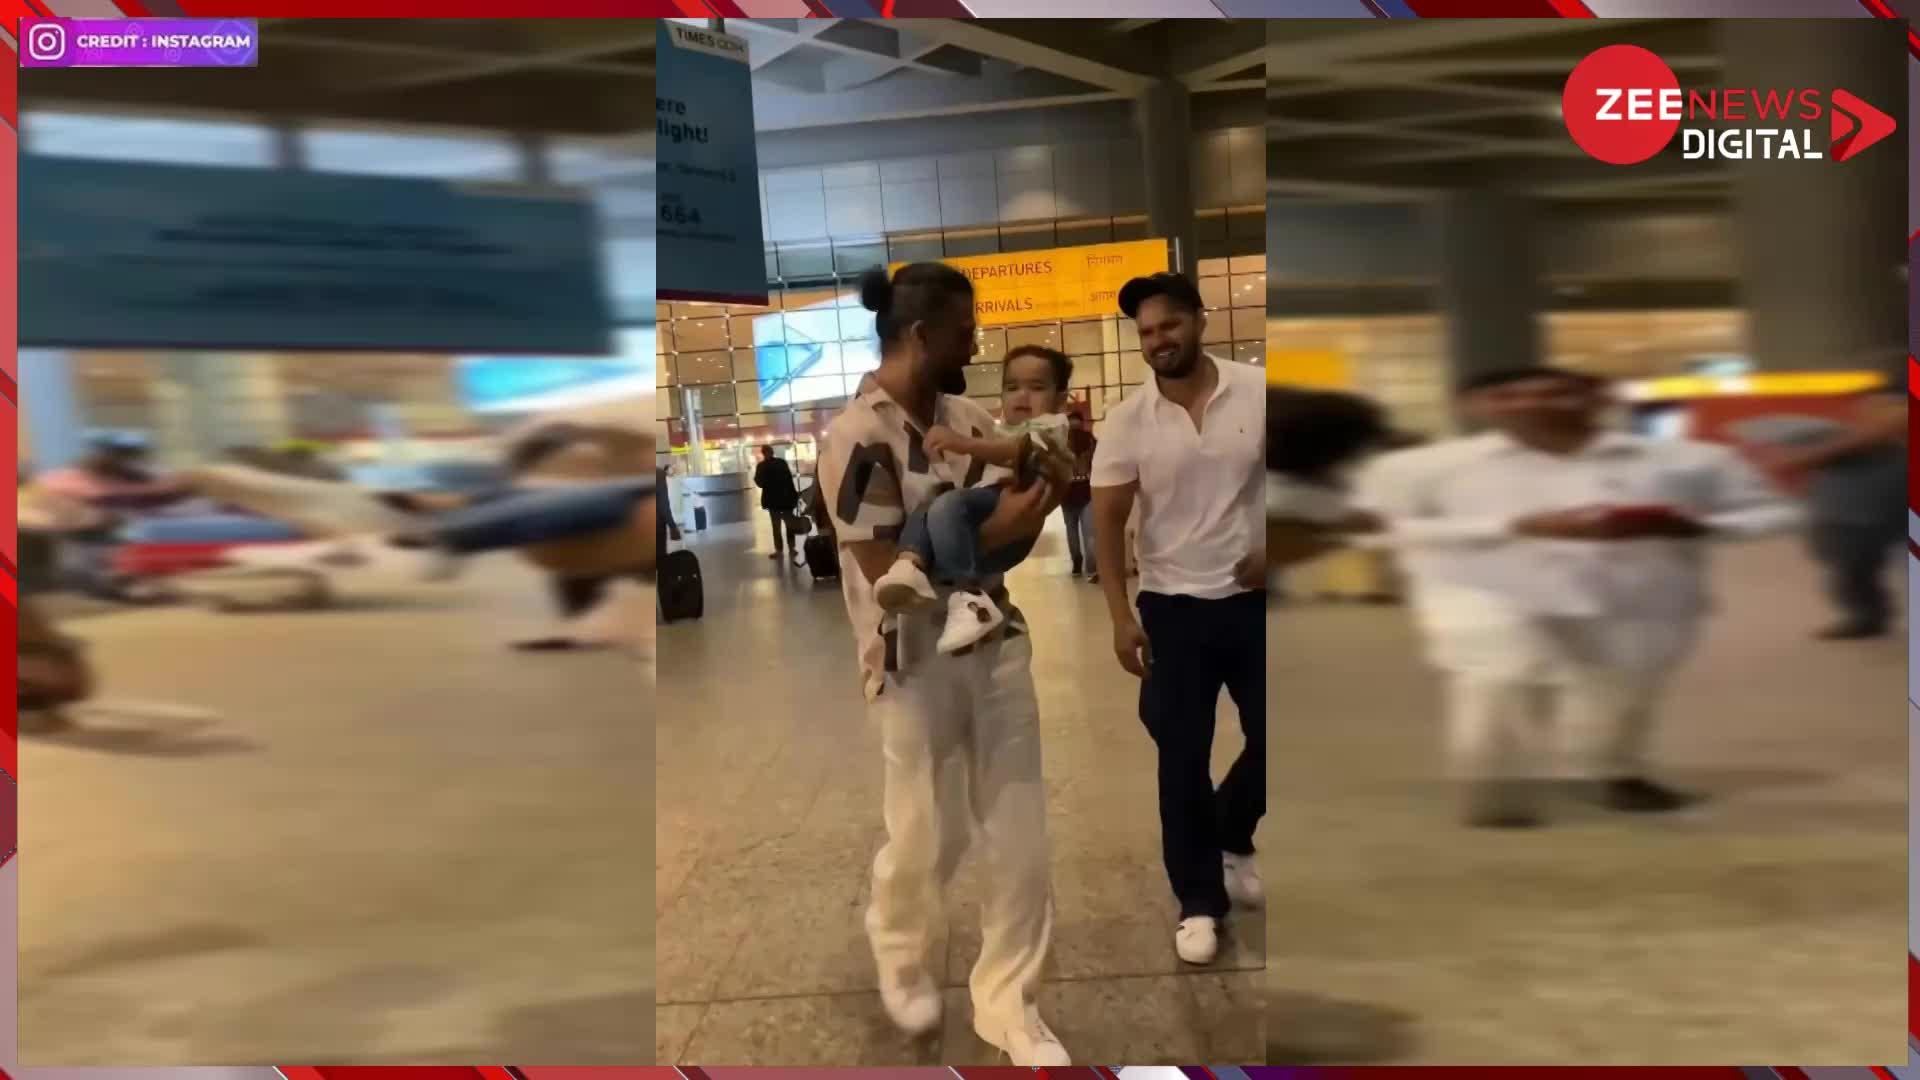 Suniel Shetty Video: एयरपोर्ट पर छोटे बच्चे को गोद में उठाकर मस्ती करने लगे सुनील शेट्टी, सामने आया बेहद क्यूट वीडियो